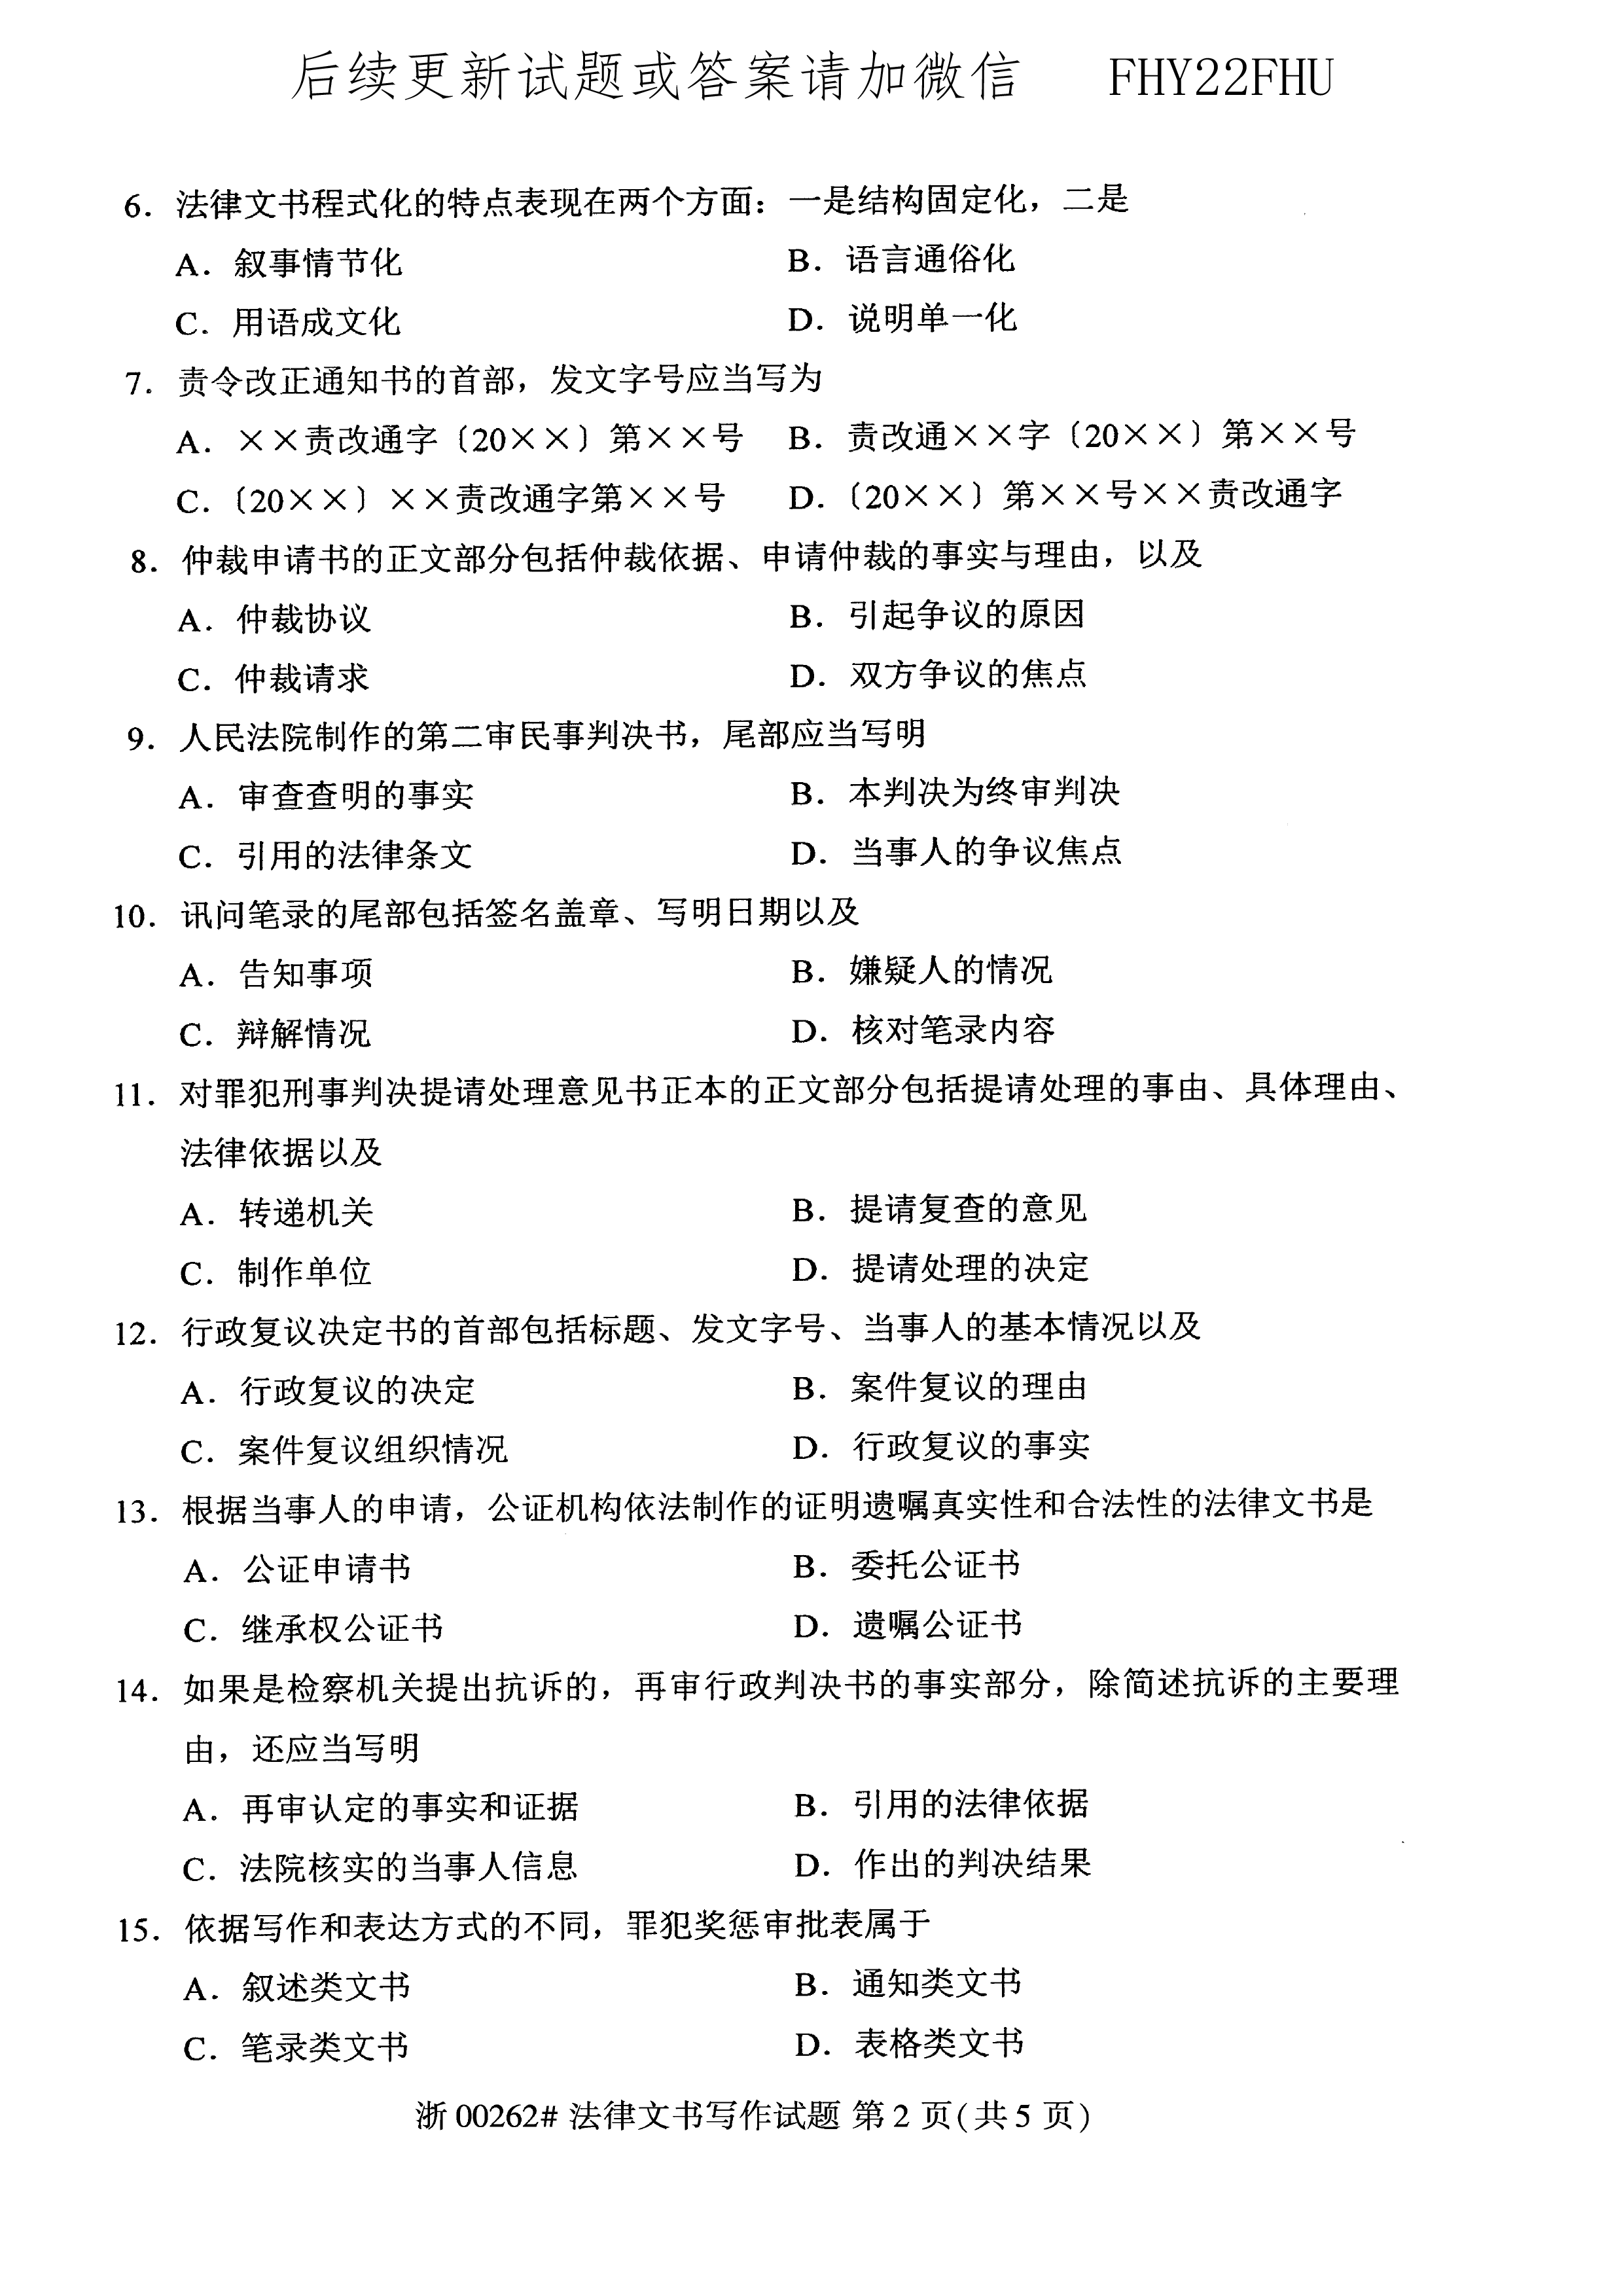 2020年10月贵州自考00262《法律文书写作》真题及答案